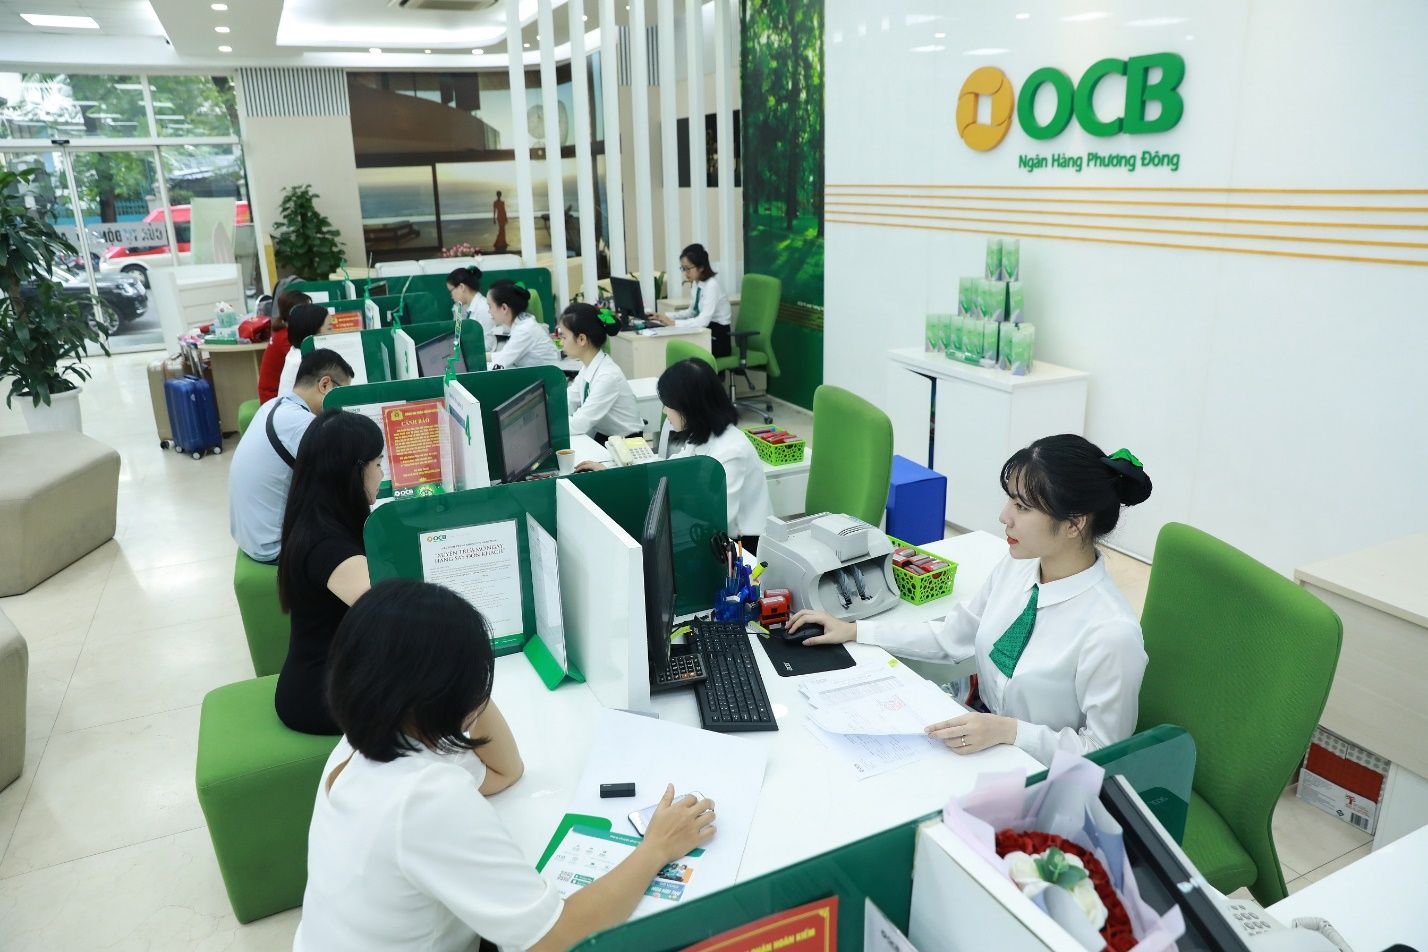 Lộ chuyện OCB bơm vốn cho công ty bất động sản sân sau và người quen của Chủ tịch Trịnh Văn Tuấn                                    